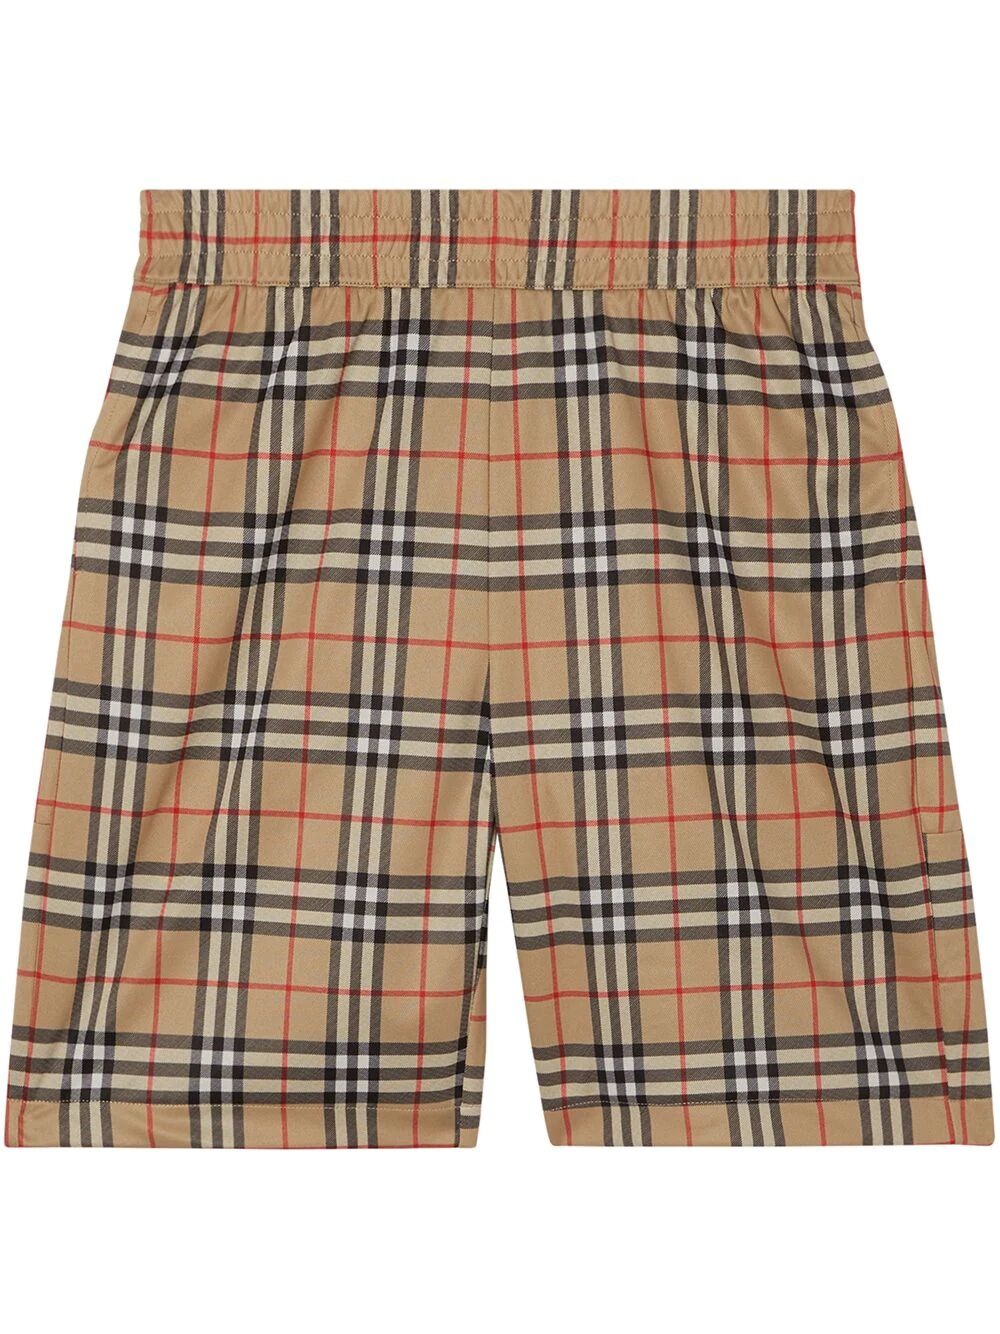 Vintage check shorts - 1